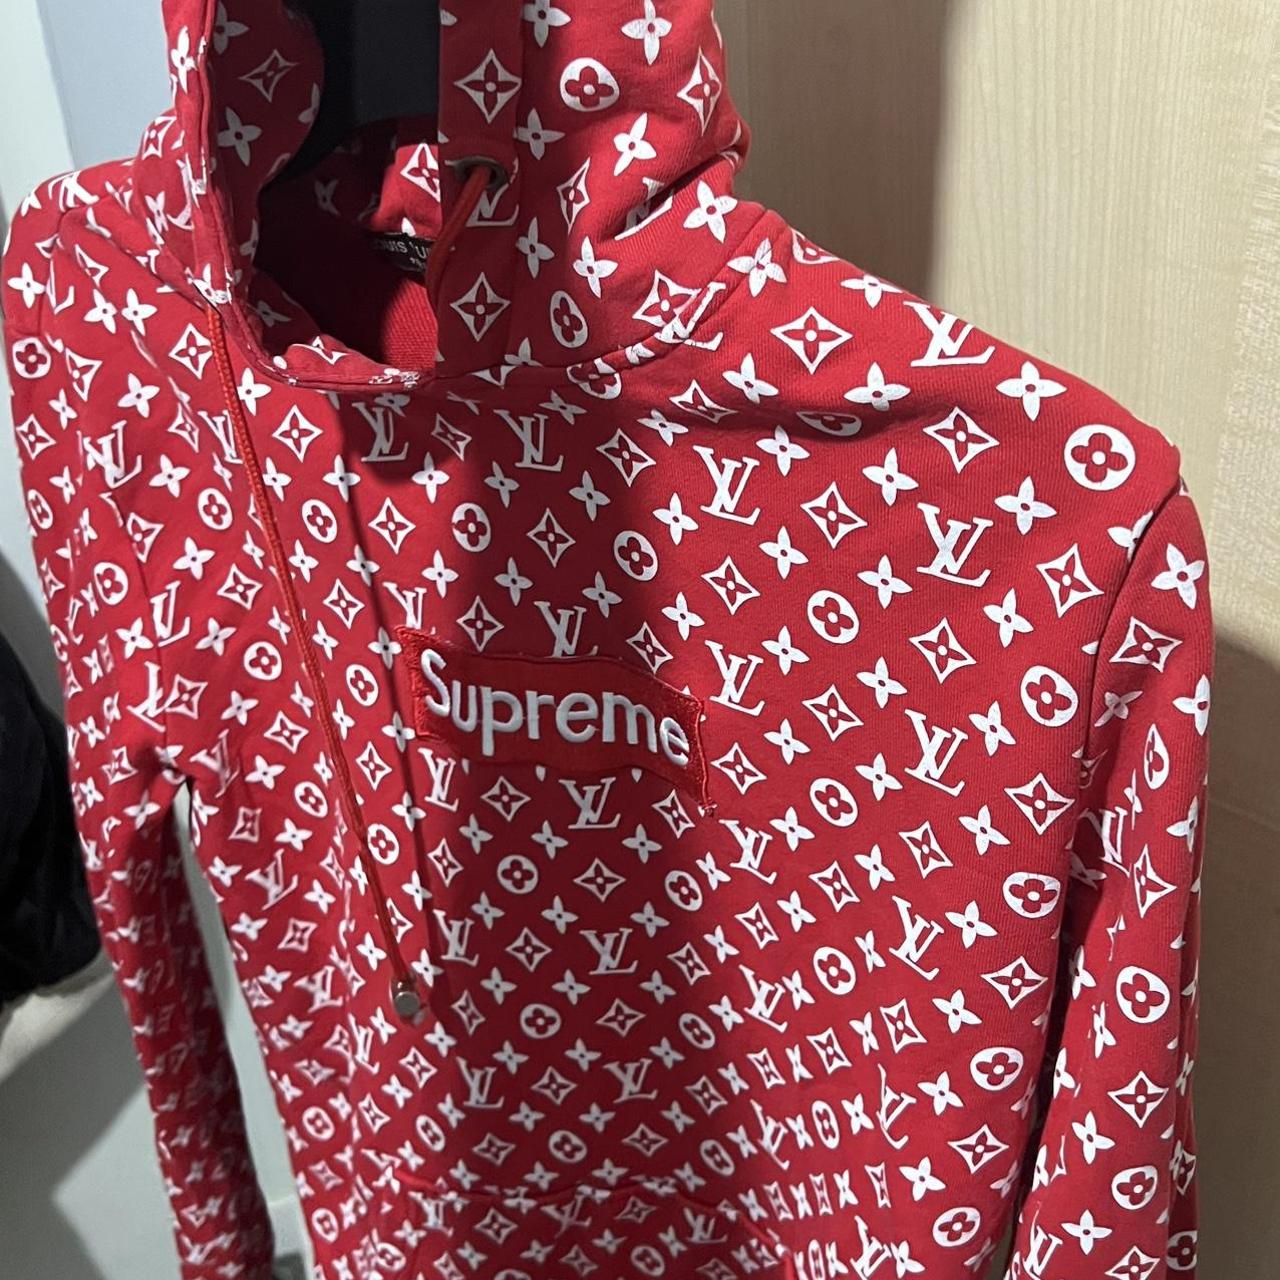 Lv x supreme hoodie - Depop